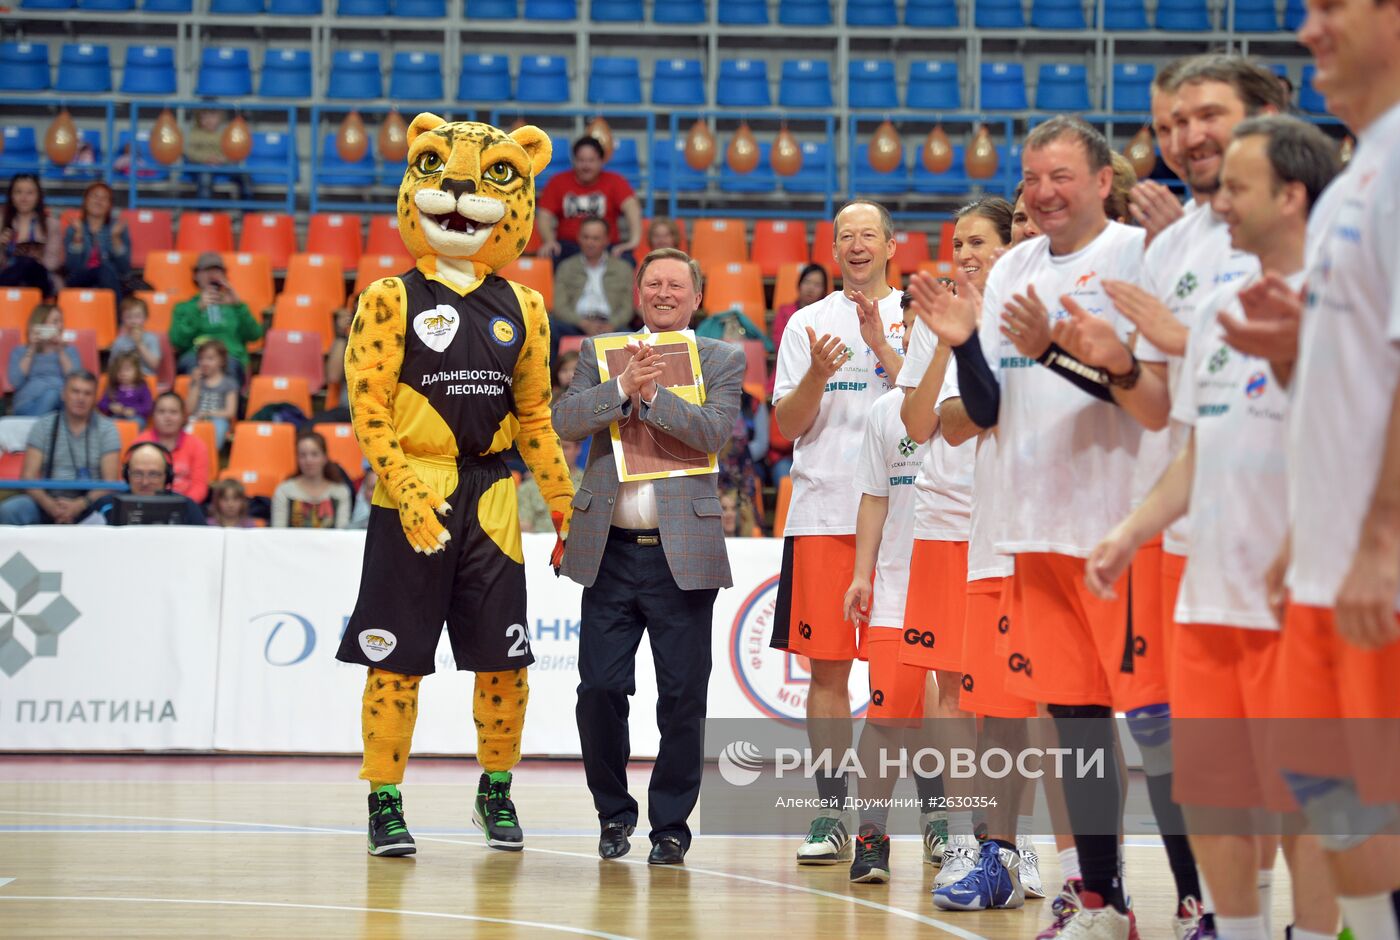 Благотворительный баскетбольный матч в поддержку подопечных фонда Гоши Куценко "Шаг вместе"